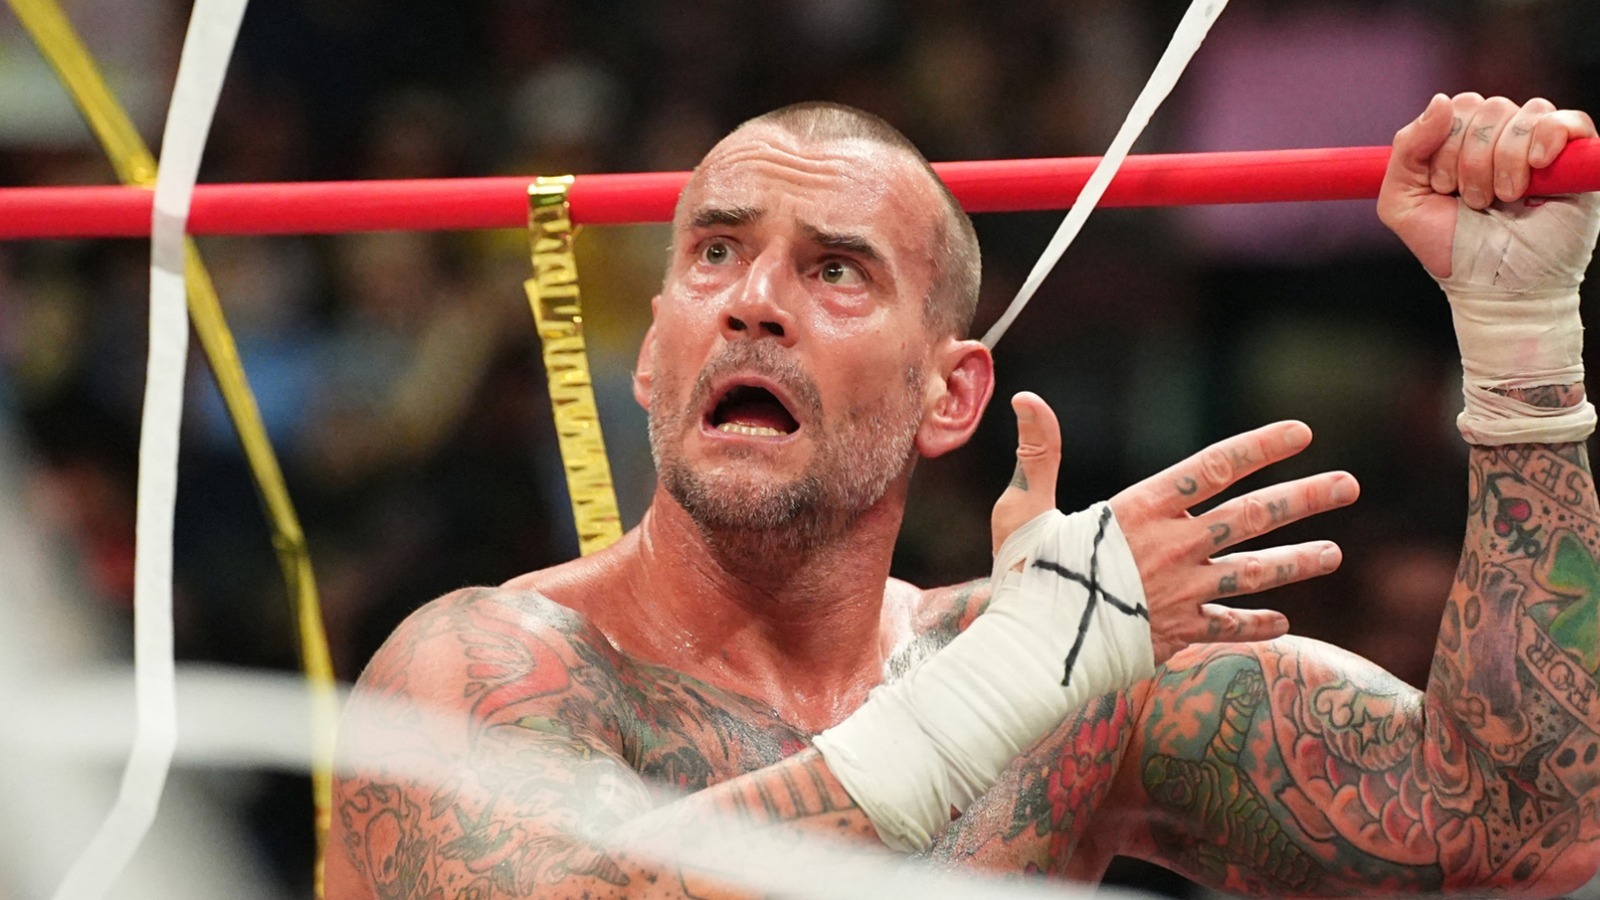 Detalles sobre el incidente de colisión de AEW entre bastidores que involucra a Jack Perry y CM Punk